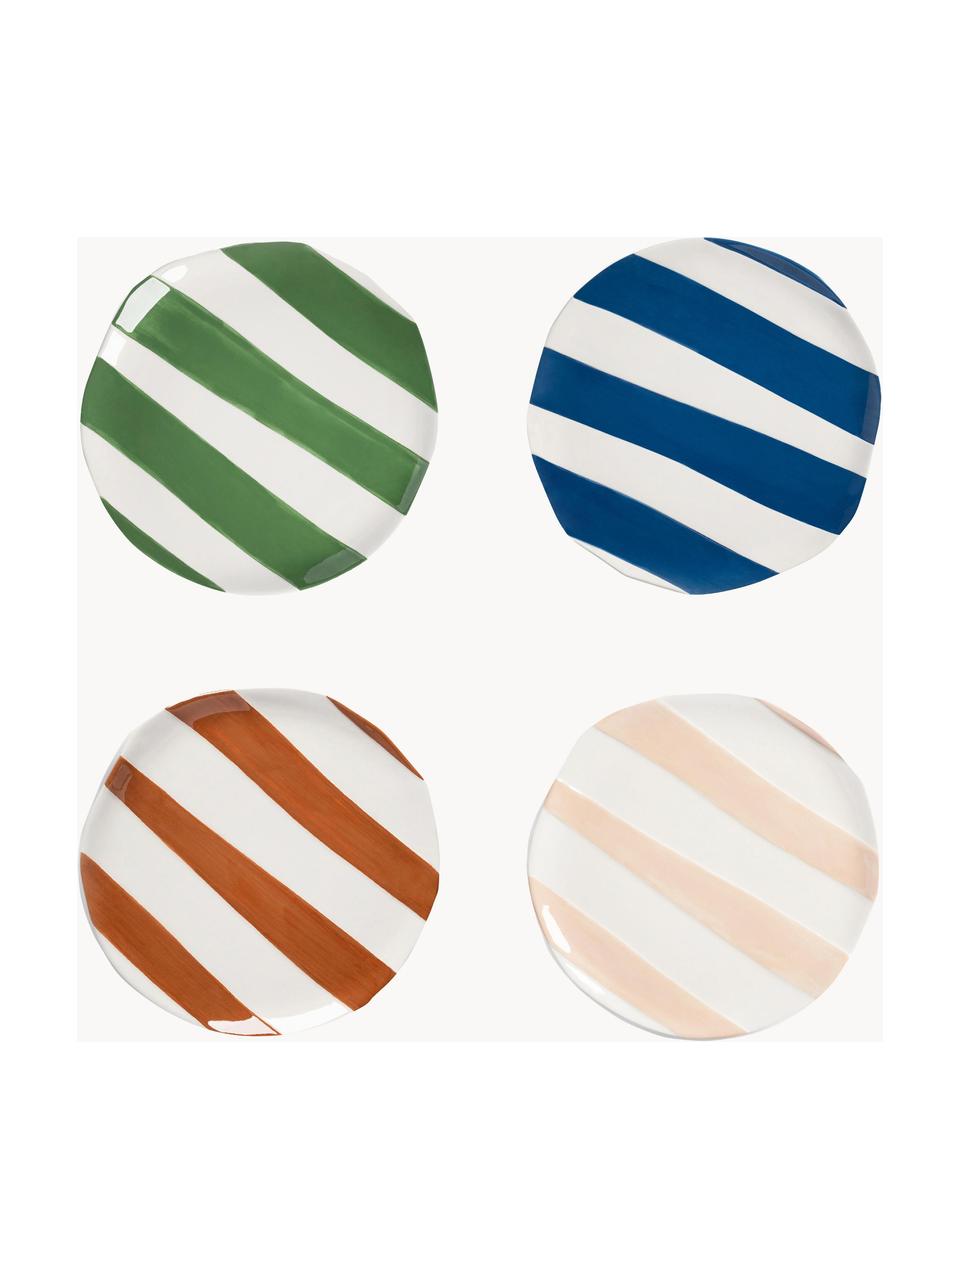 Ontbijtbord Oblique van dolomiet, set van 4, Dolomiet, Groen, blauw, beige, bruin, wit, Ø 18 cm